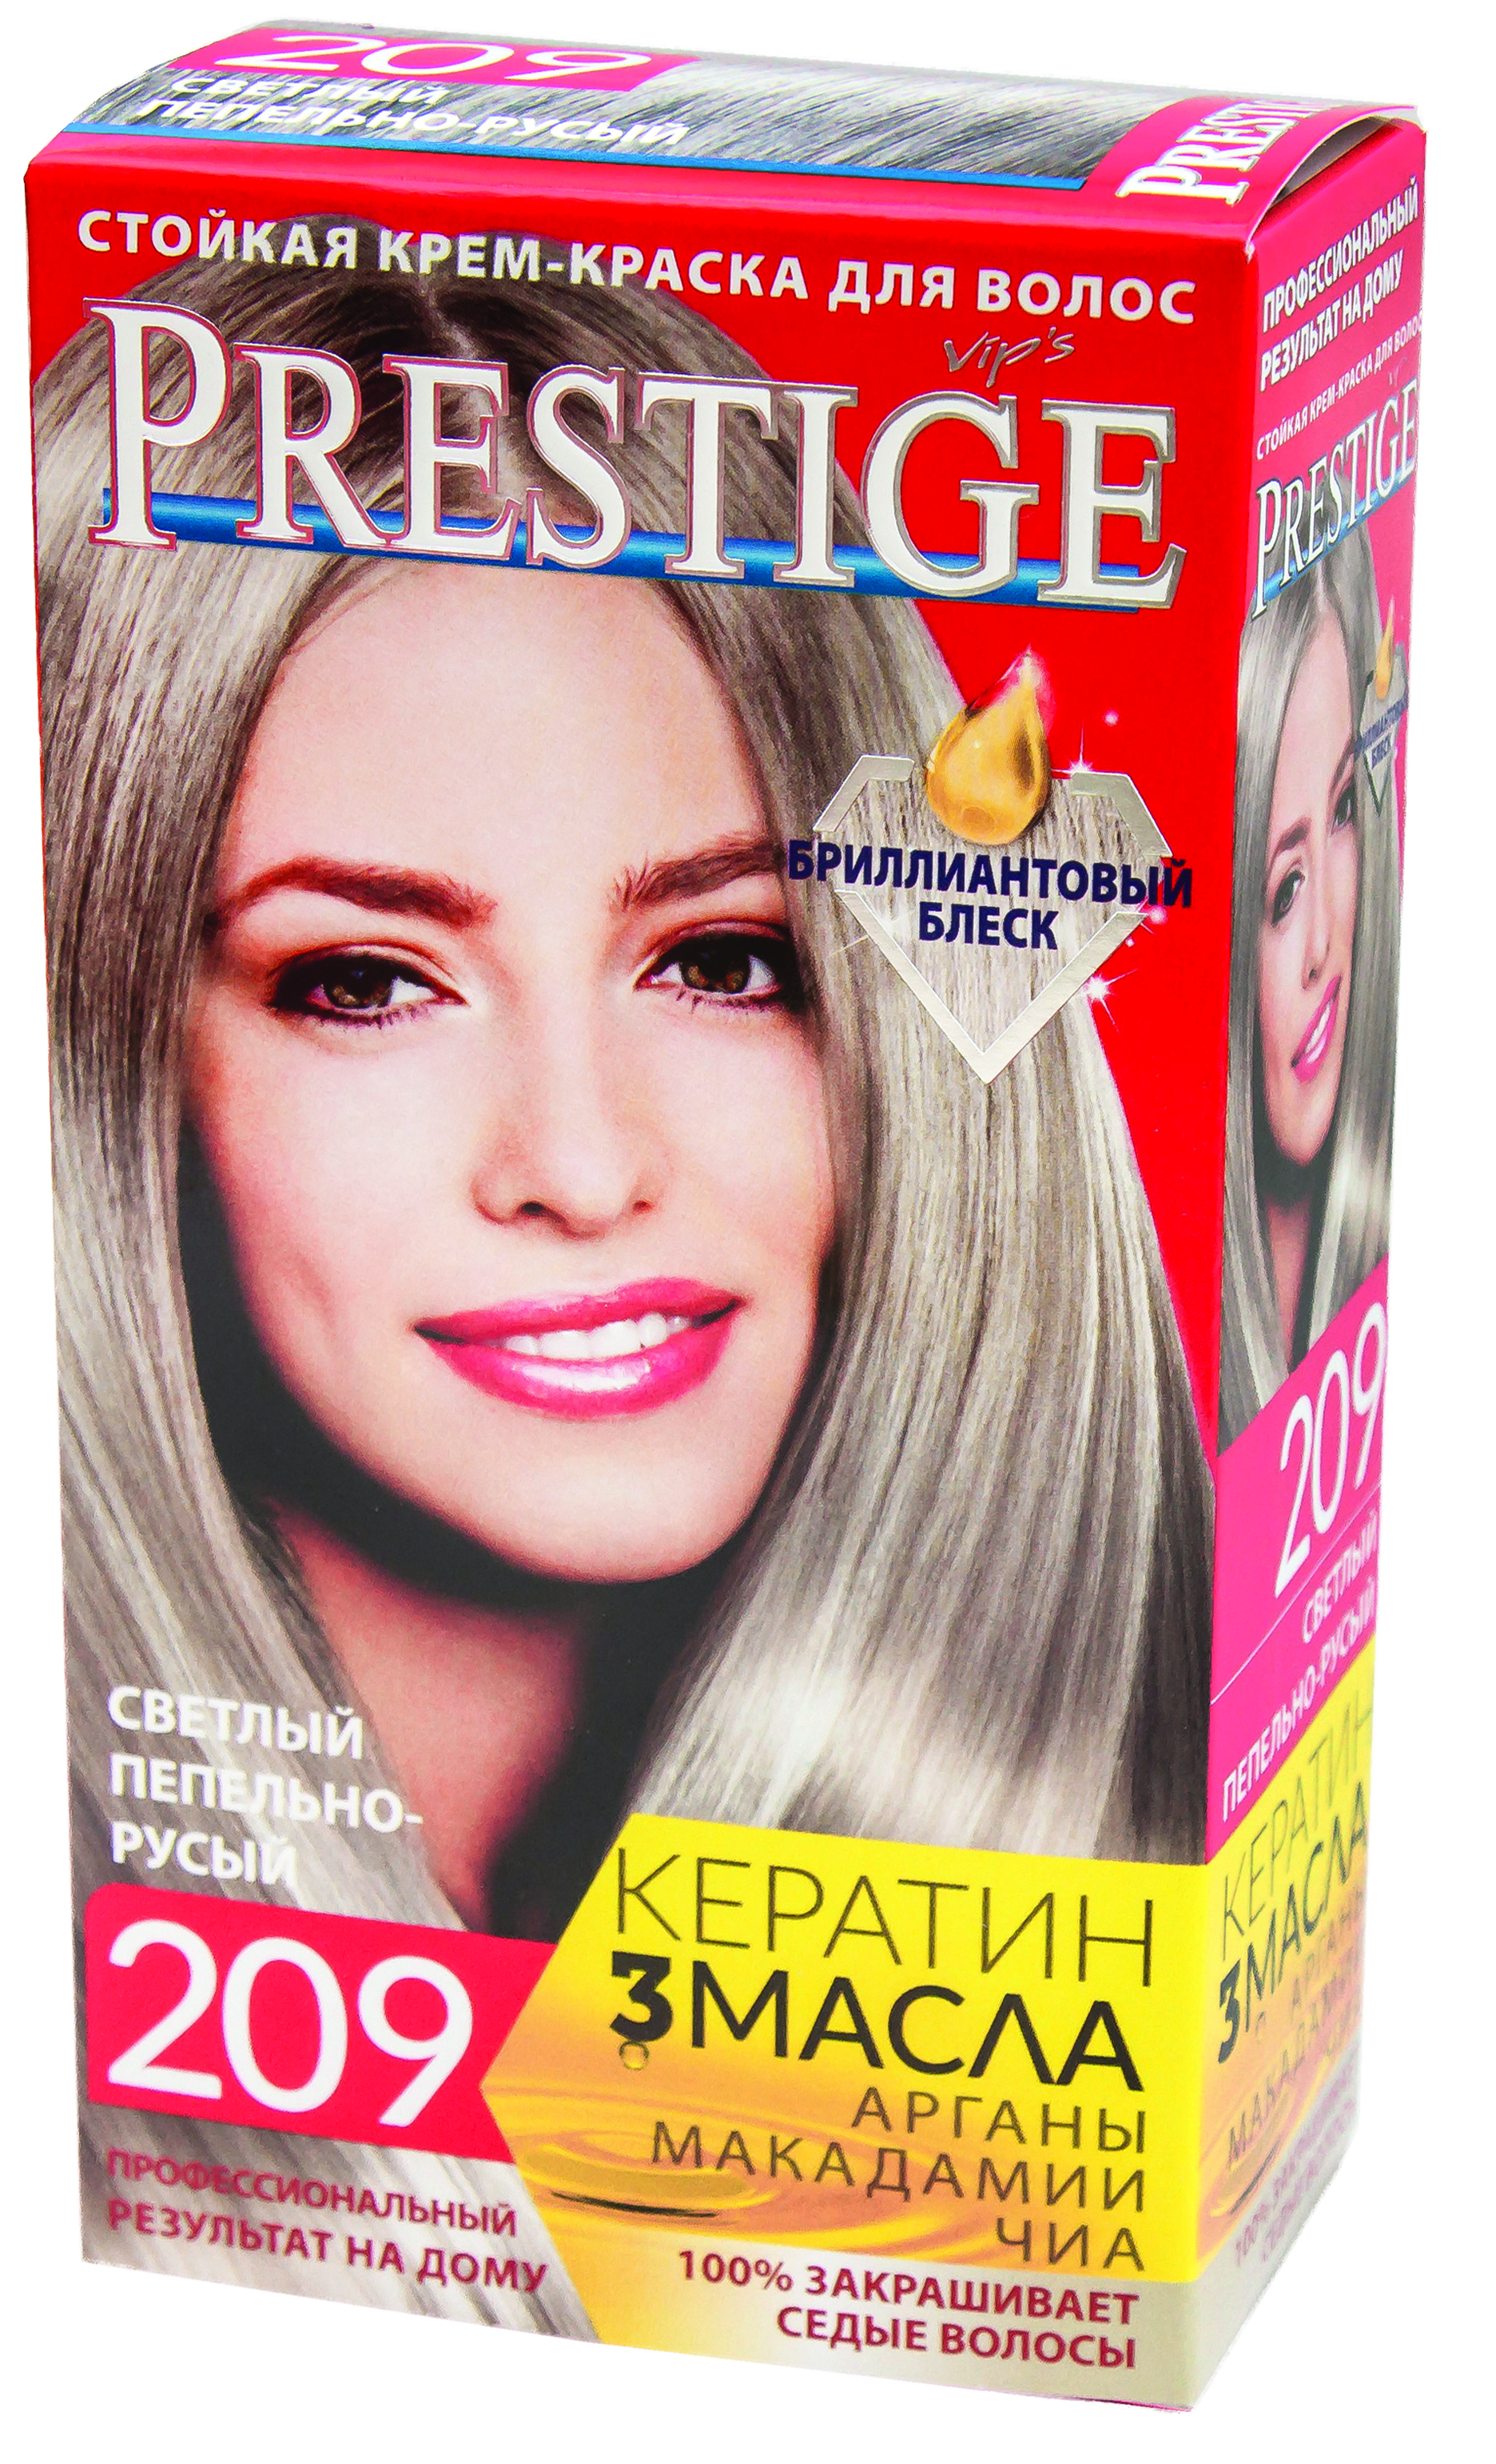 Краска для волос prestige 205 натурально-русый